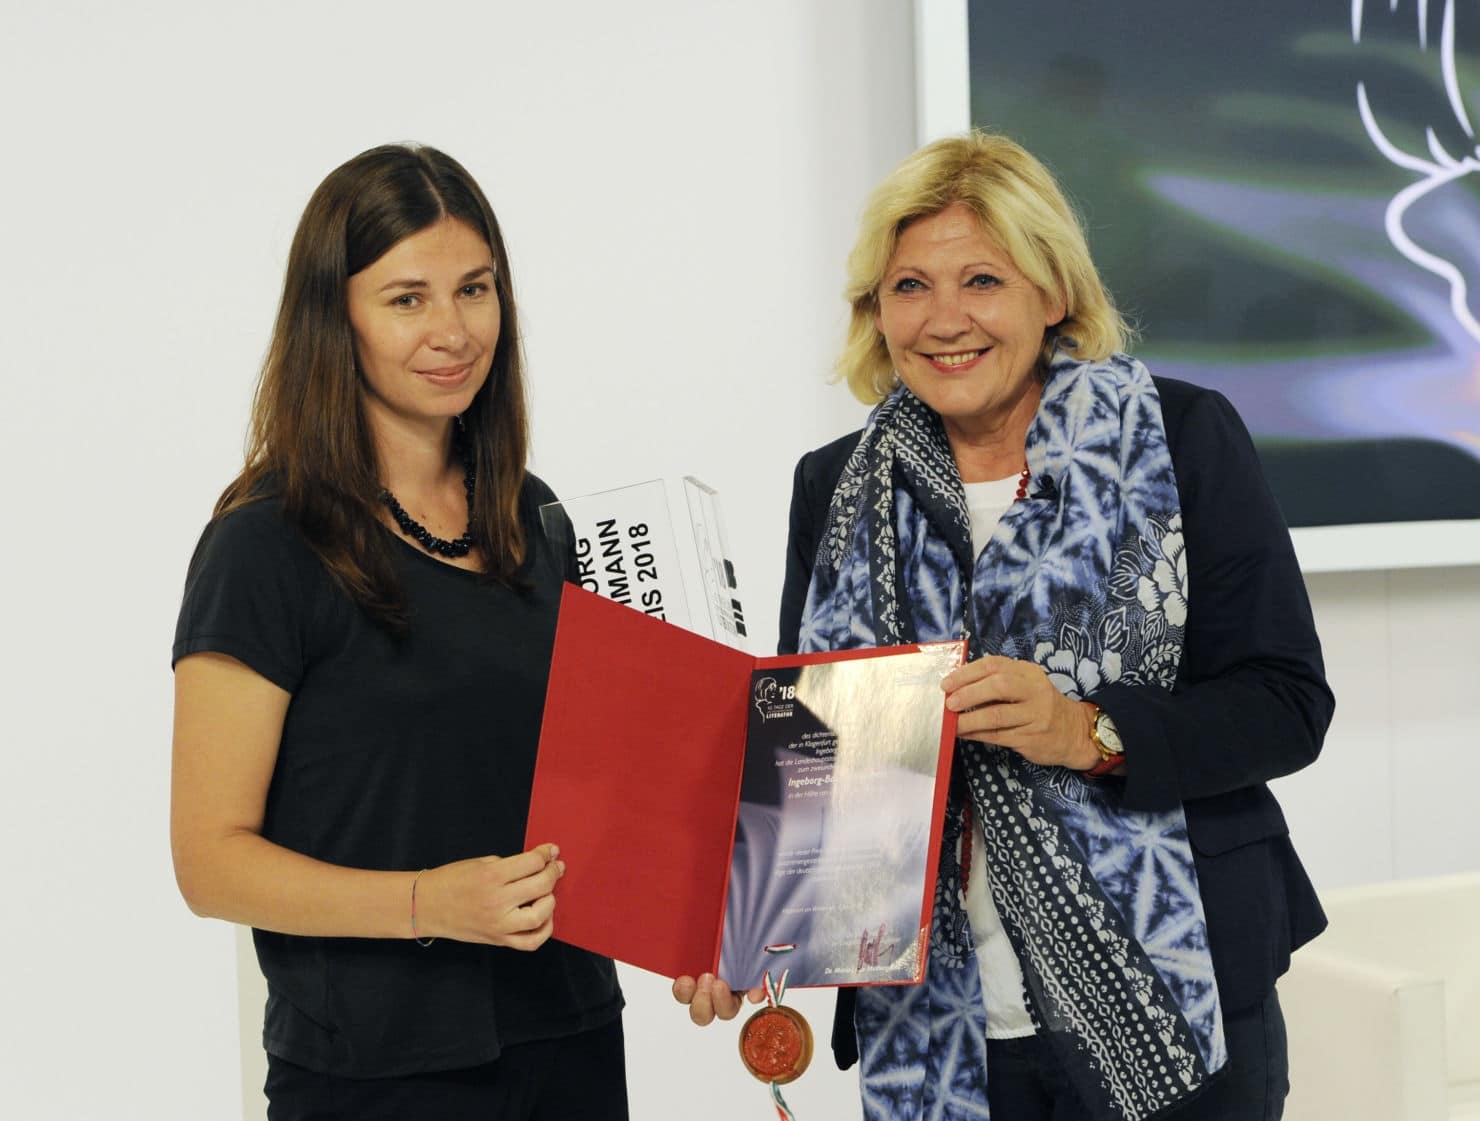 Bürgermeisterin Dr. Maria-Luise Mathiaschitz überreicht die Siegerurkunde zum 42. Ingeborg-Bachmann-Preis an Tanja Maljartschuk.